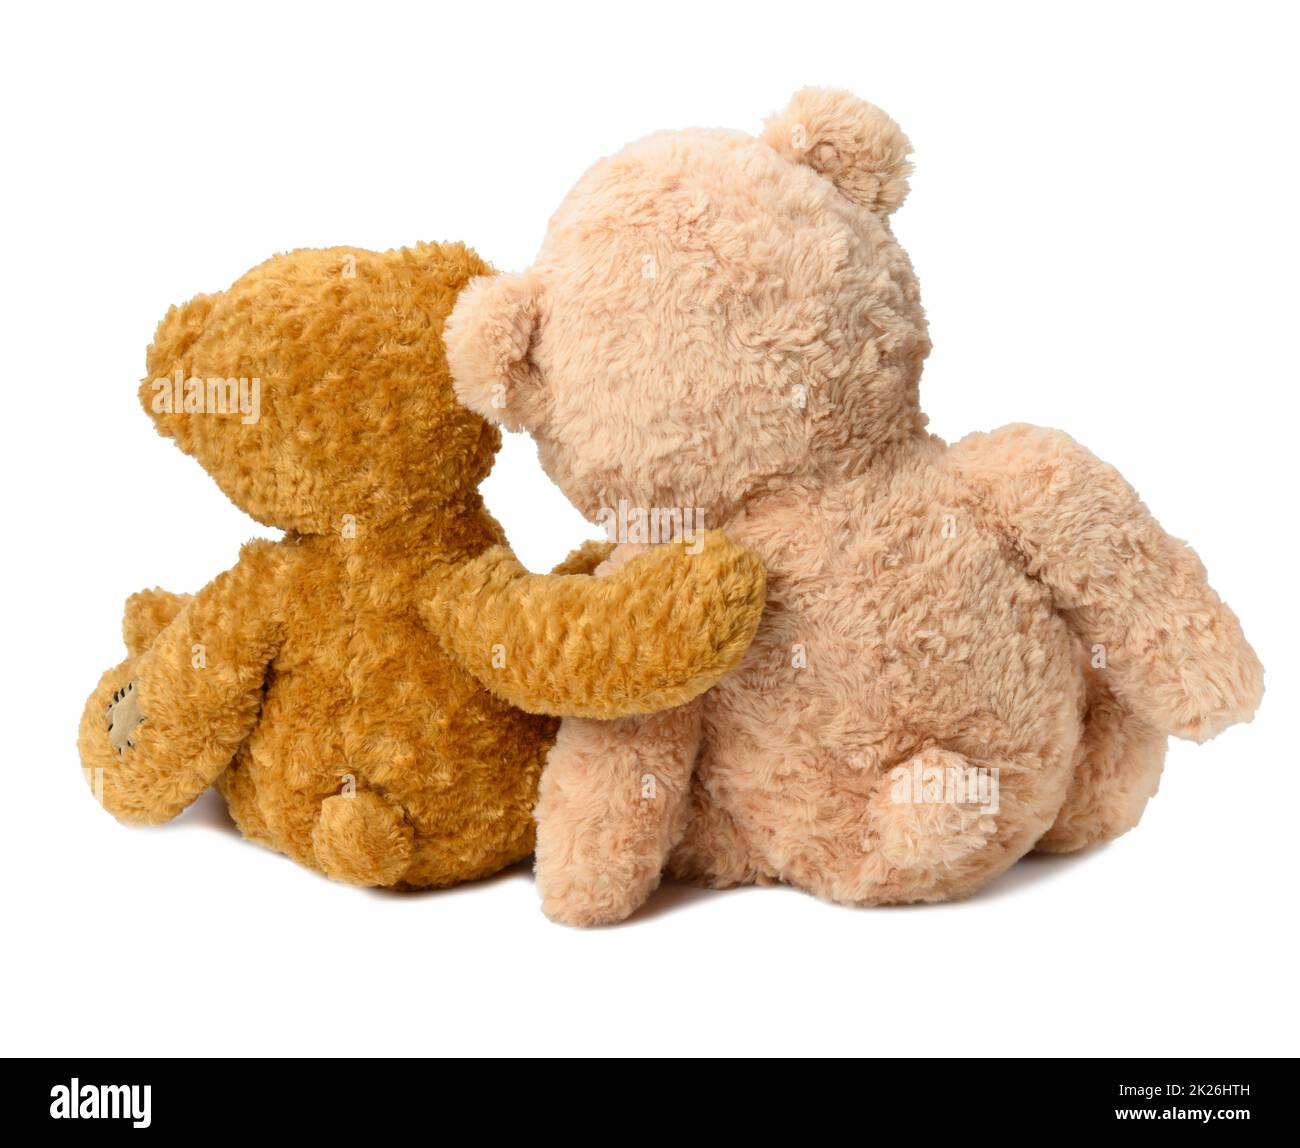 deux ours en peluche s'assoient avec leur dos sur un fond blanc isolé.Amour et amitié Banque D'Images